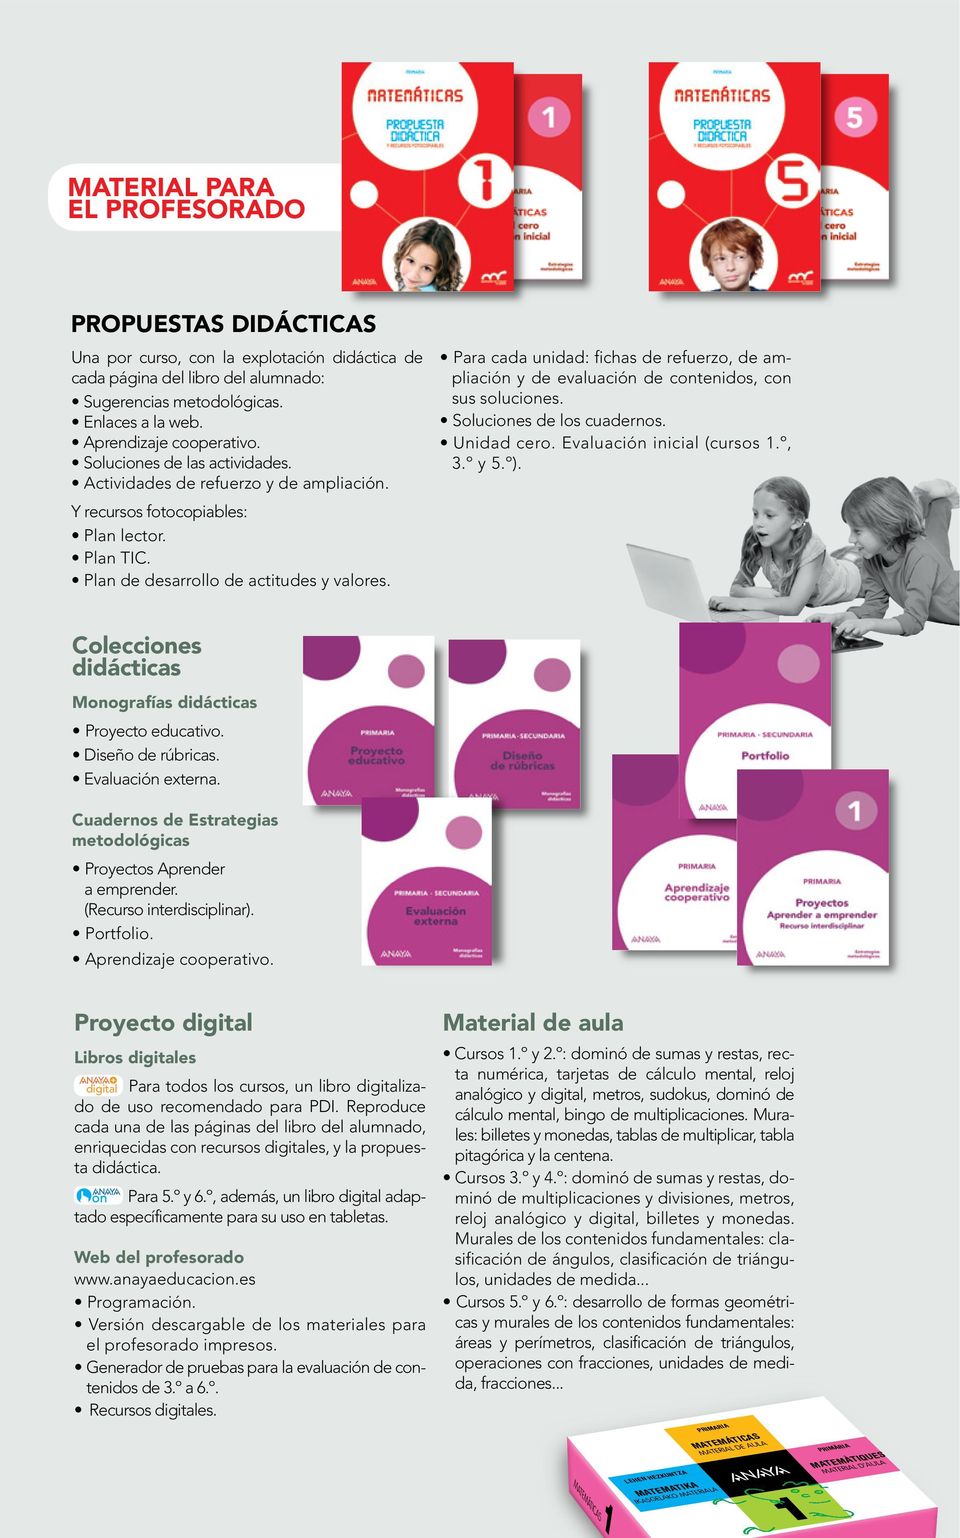 Libros digitales digital Para todos los cursos, un libro digitalizado de uso recomendado para PDI.